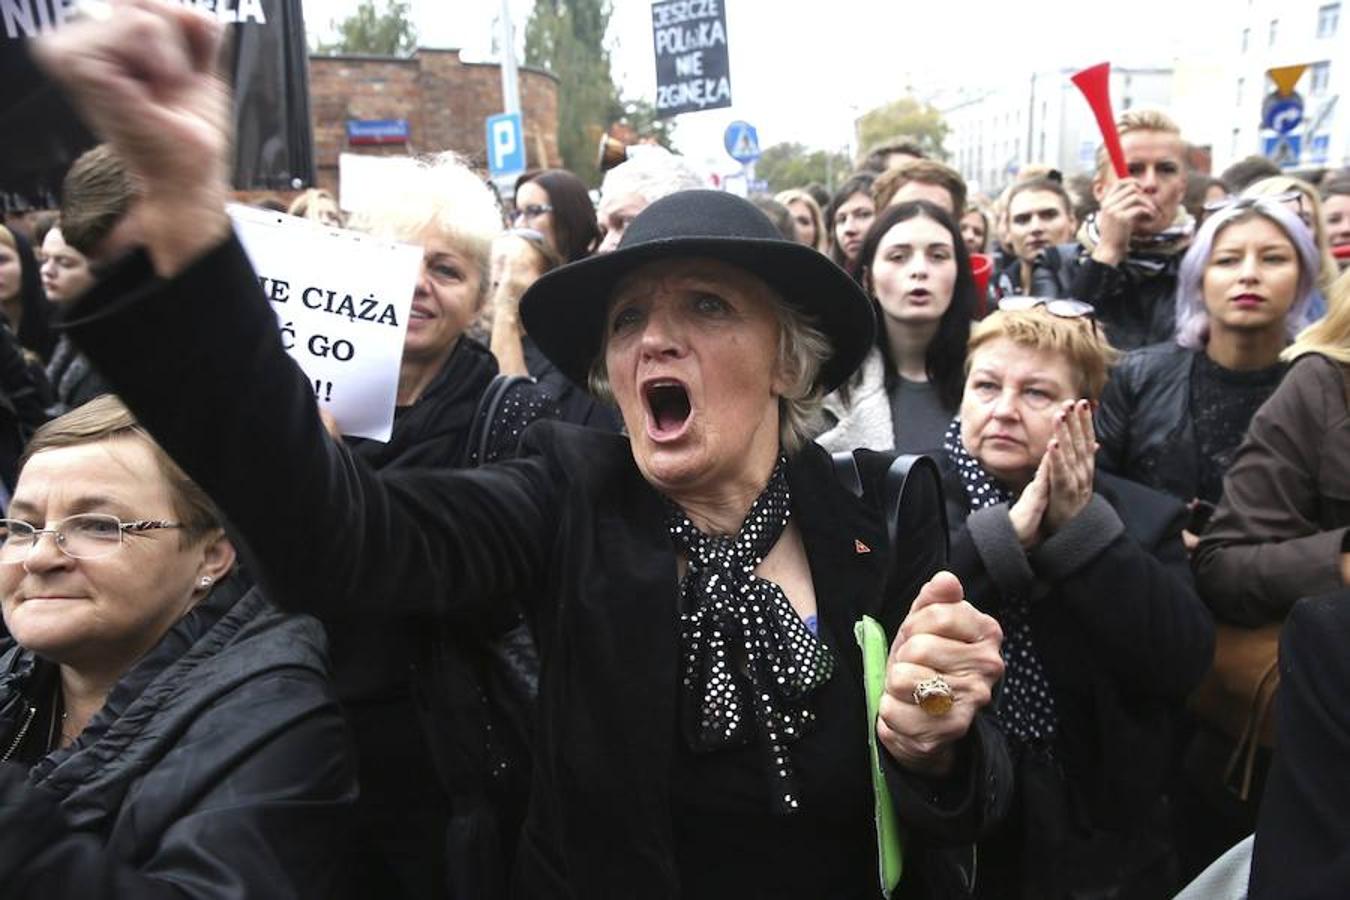 El detonante de la protesta tuvo lugar el pasado 23 de septiembre, cuando el Parlamento polaco admitió a trámite una iniciativa popular que propone prohibir la interrupción voluntaria del embarazo, penas de cárcel para las mujeres que aborten.